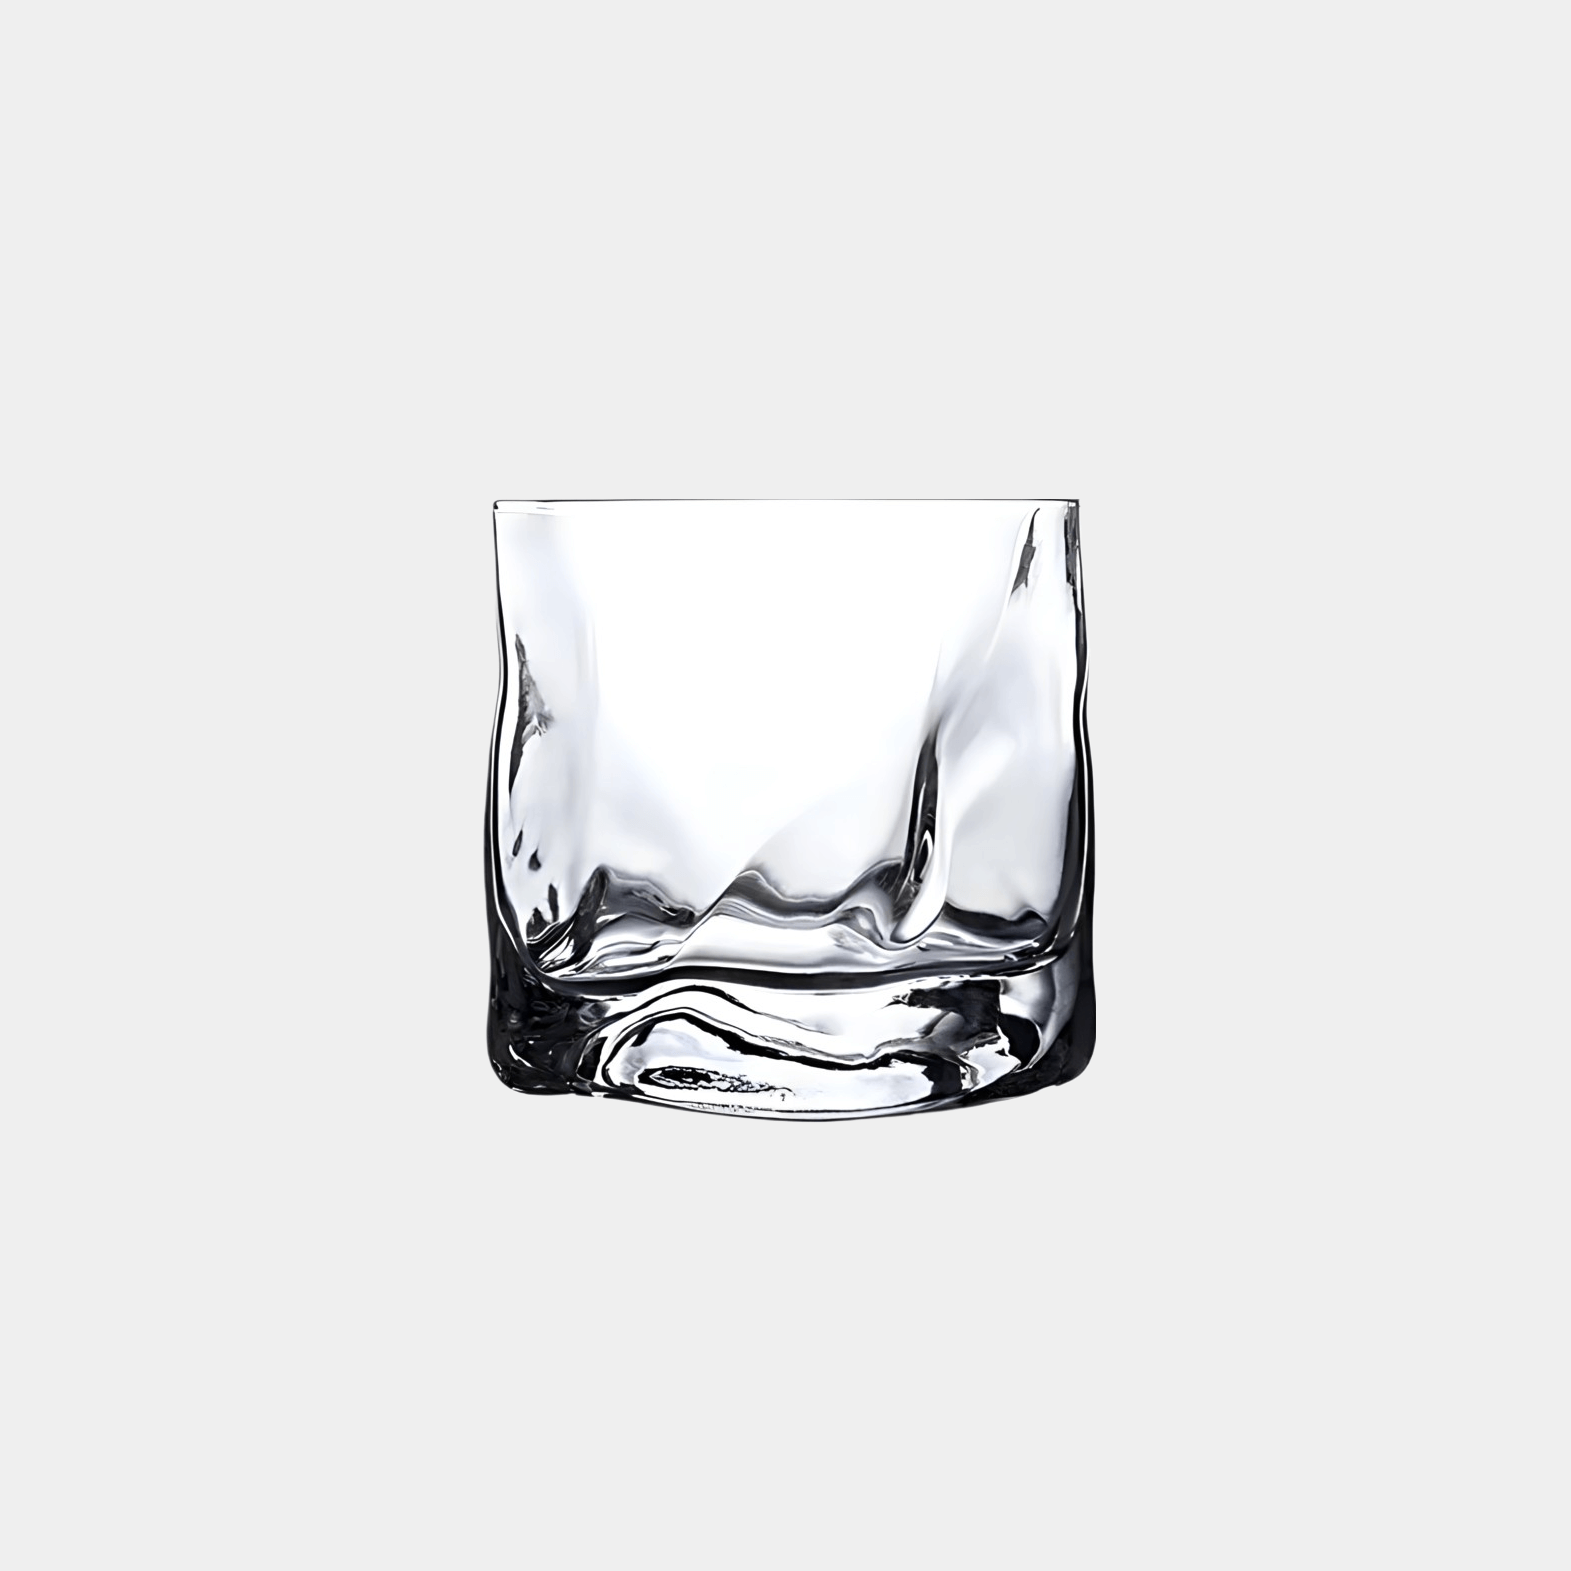 Ein modernes und minimalistisches Diamond Twist Glas, präsentiert vor einem eleganten grauen Hintergrund - Einzigartiges Trinkglas mit markantem Design und ästhetischem Appeal. Handgefertigt für ein exquisites Trinkerlebnis. Perfekt für Cocktails, Whiskey oder erfrischende Getränke. Ein Blickfang auf jedem Tisch. Erleben Sie Luxus und Eleganz mit diesem hochwertigen, einzigartigen Glas. Ideal für den täglichen Gebrauch oder besondere Anlässe. Stilvoll und zeitlos gestaltet für anspruchsvolle Genießer.